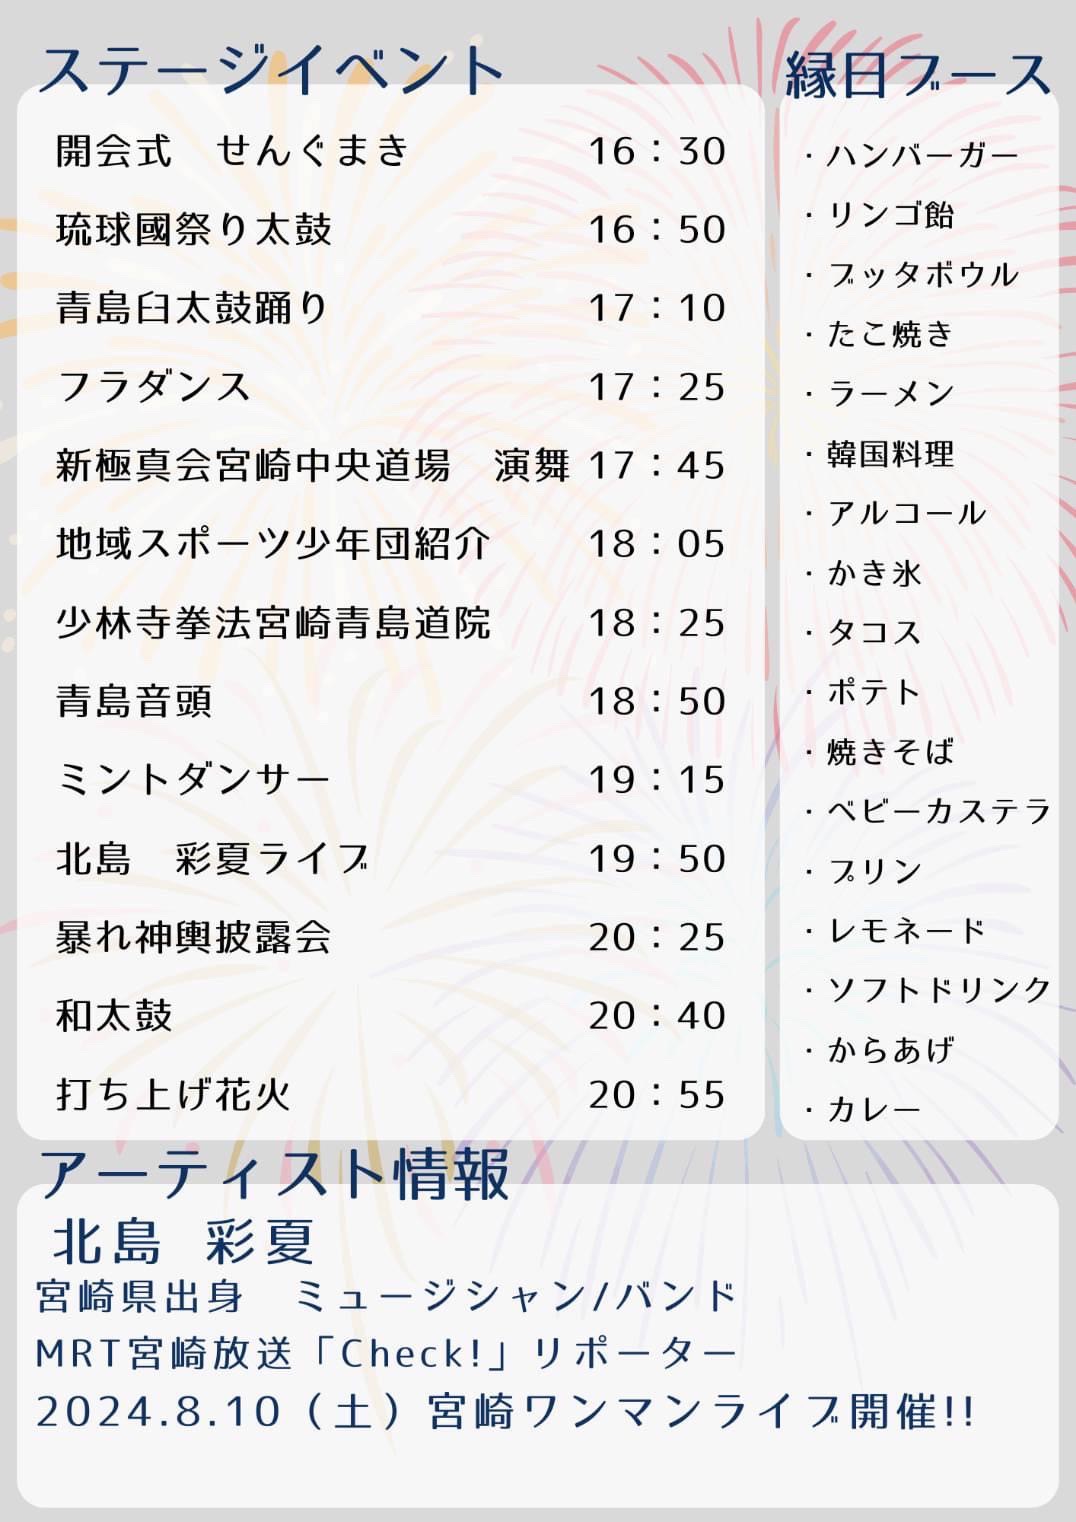 宮崎市イベント 青島海を渡る祭礼 納涼祭 2024年 画像1